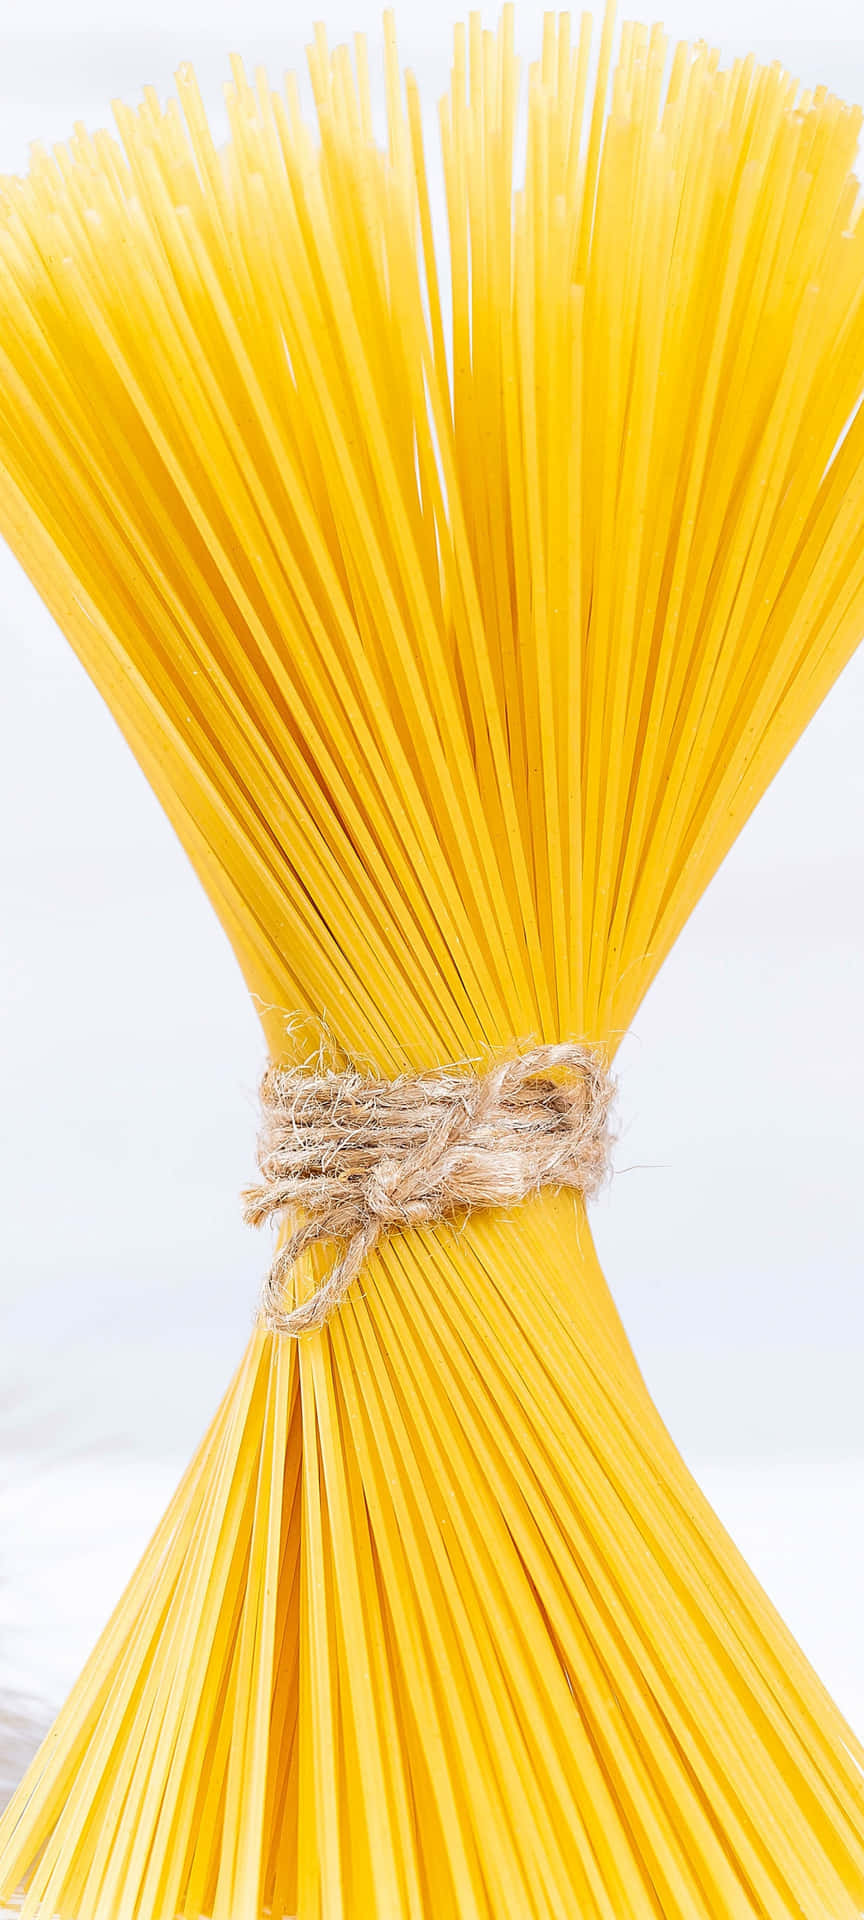 Einhaufen Gelber Spaghetti Auf Einem Weißen Hintergrund